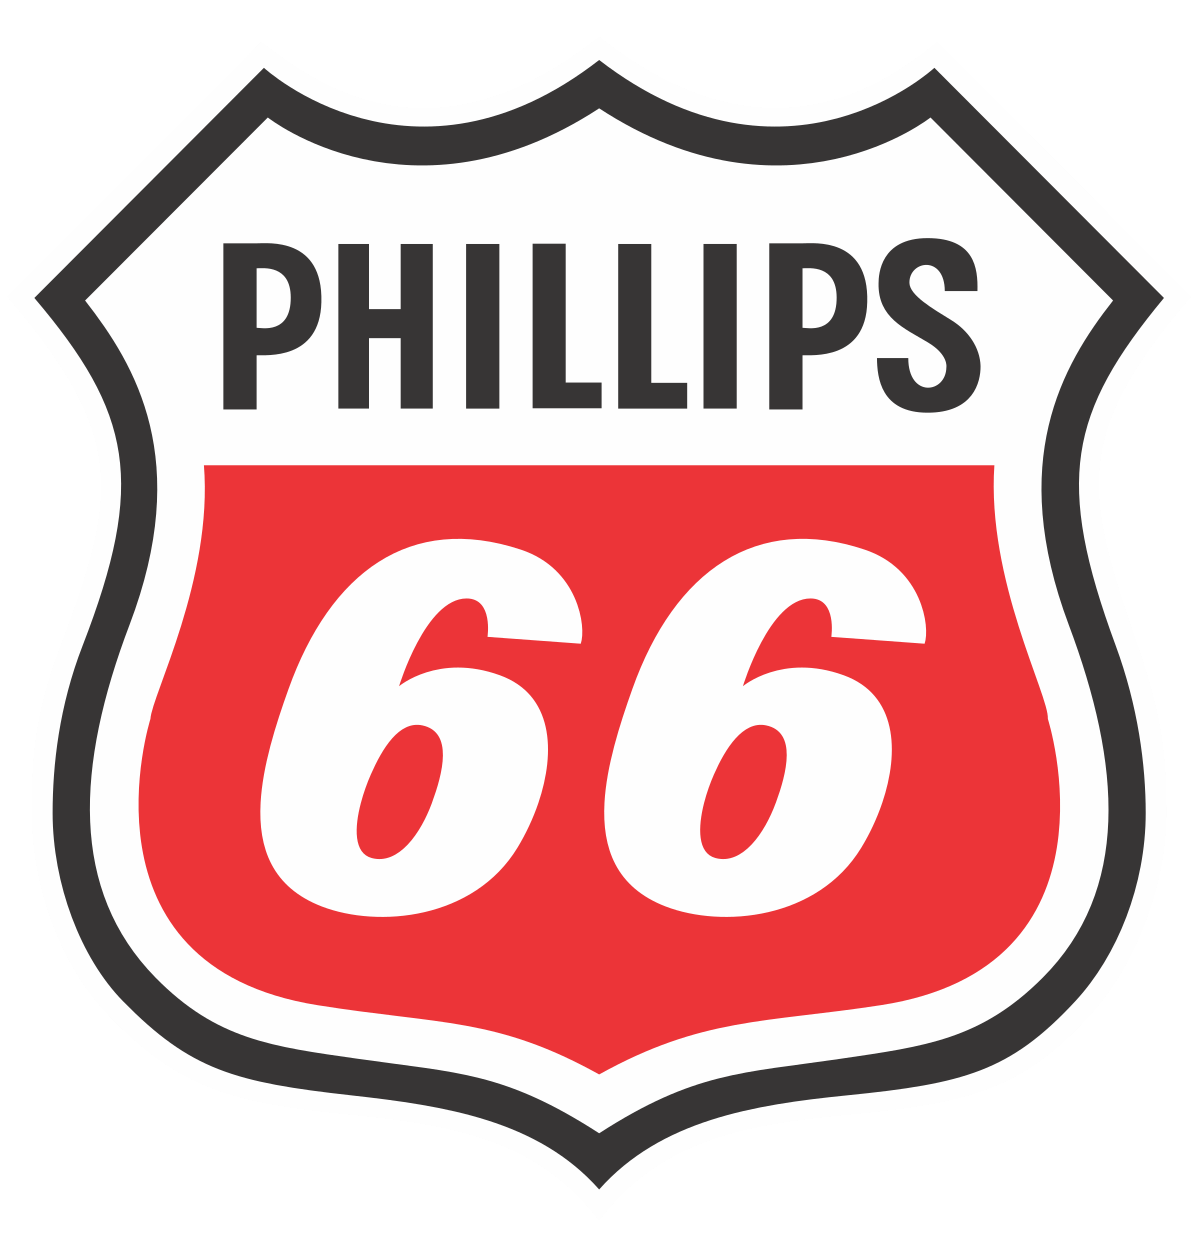 Phillips 66 Logo - Phillips 66